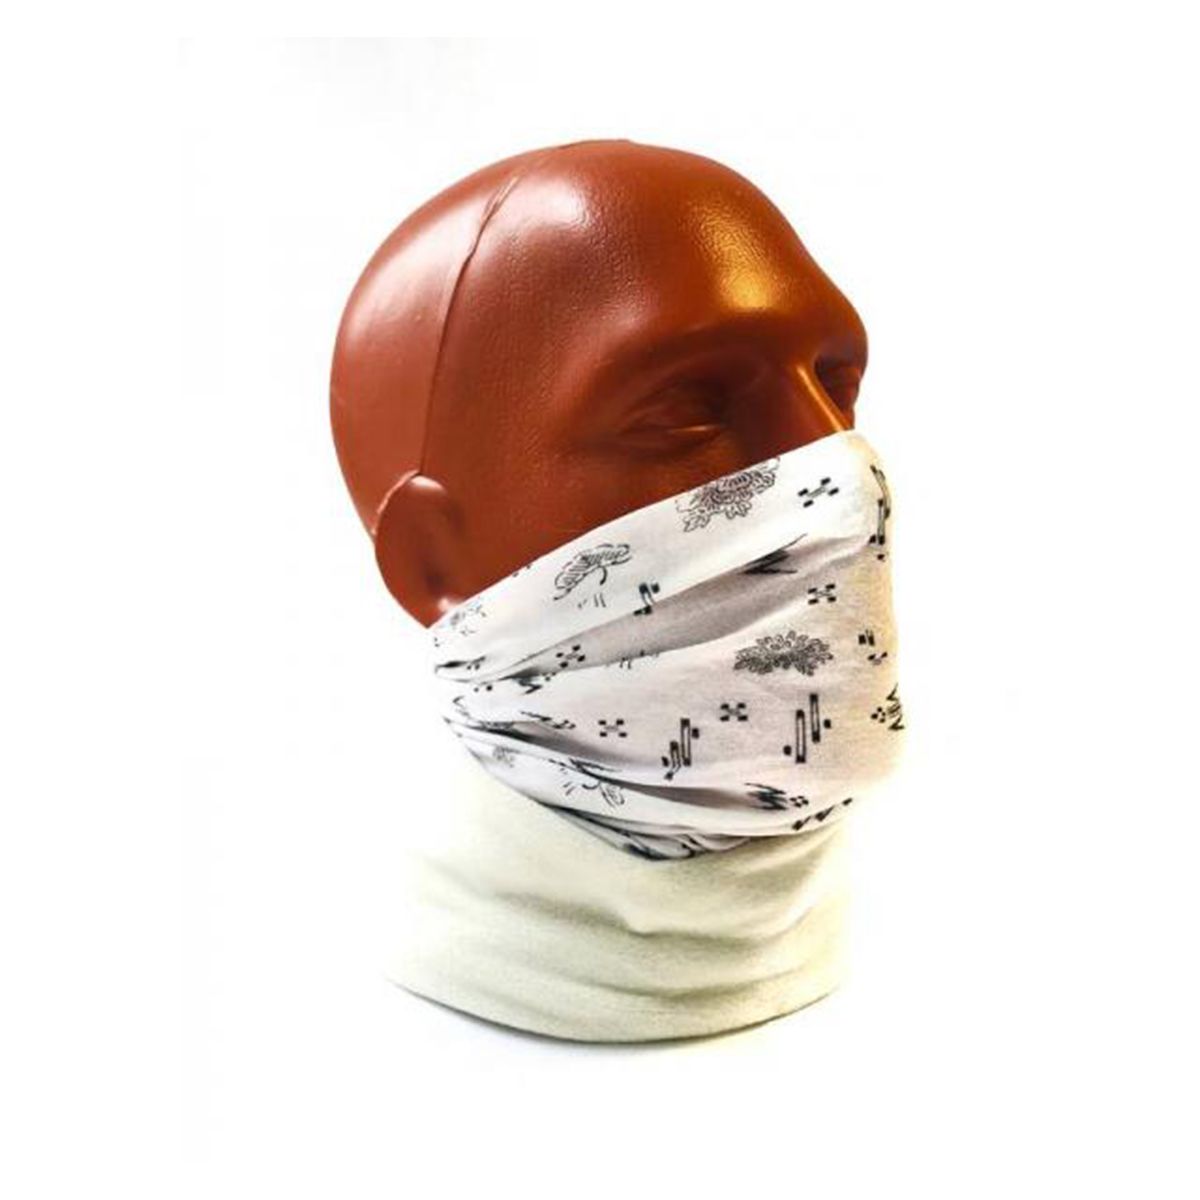 دستمال سر و گردن باف مدل Umeboshi Cru -  - 3